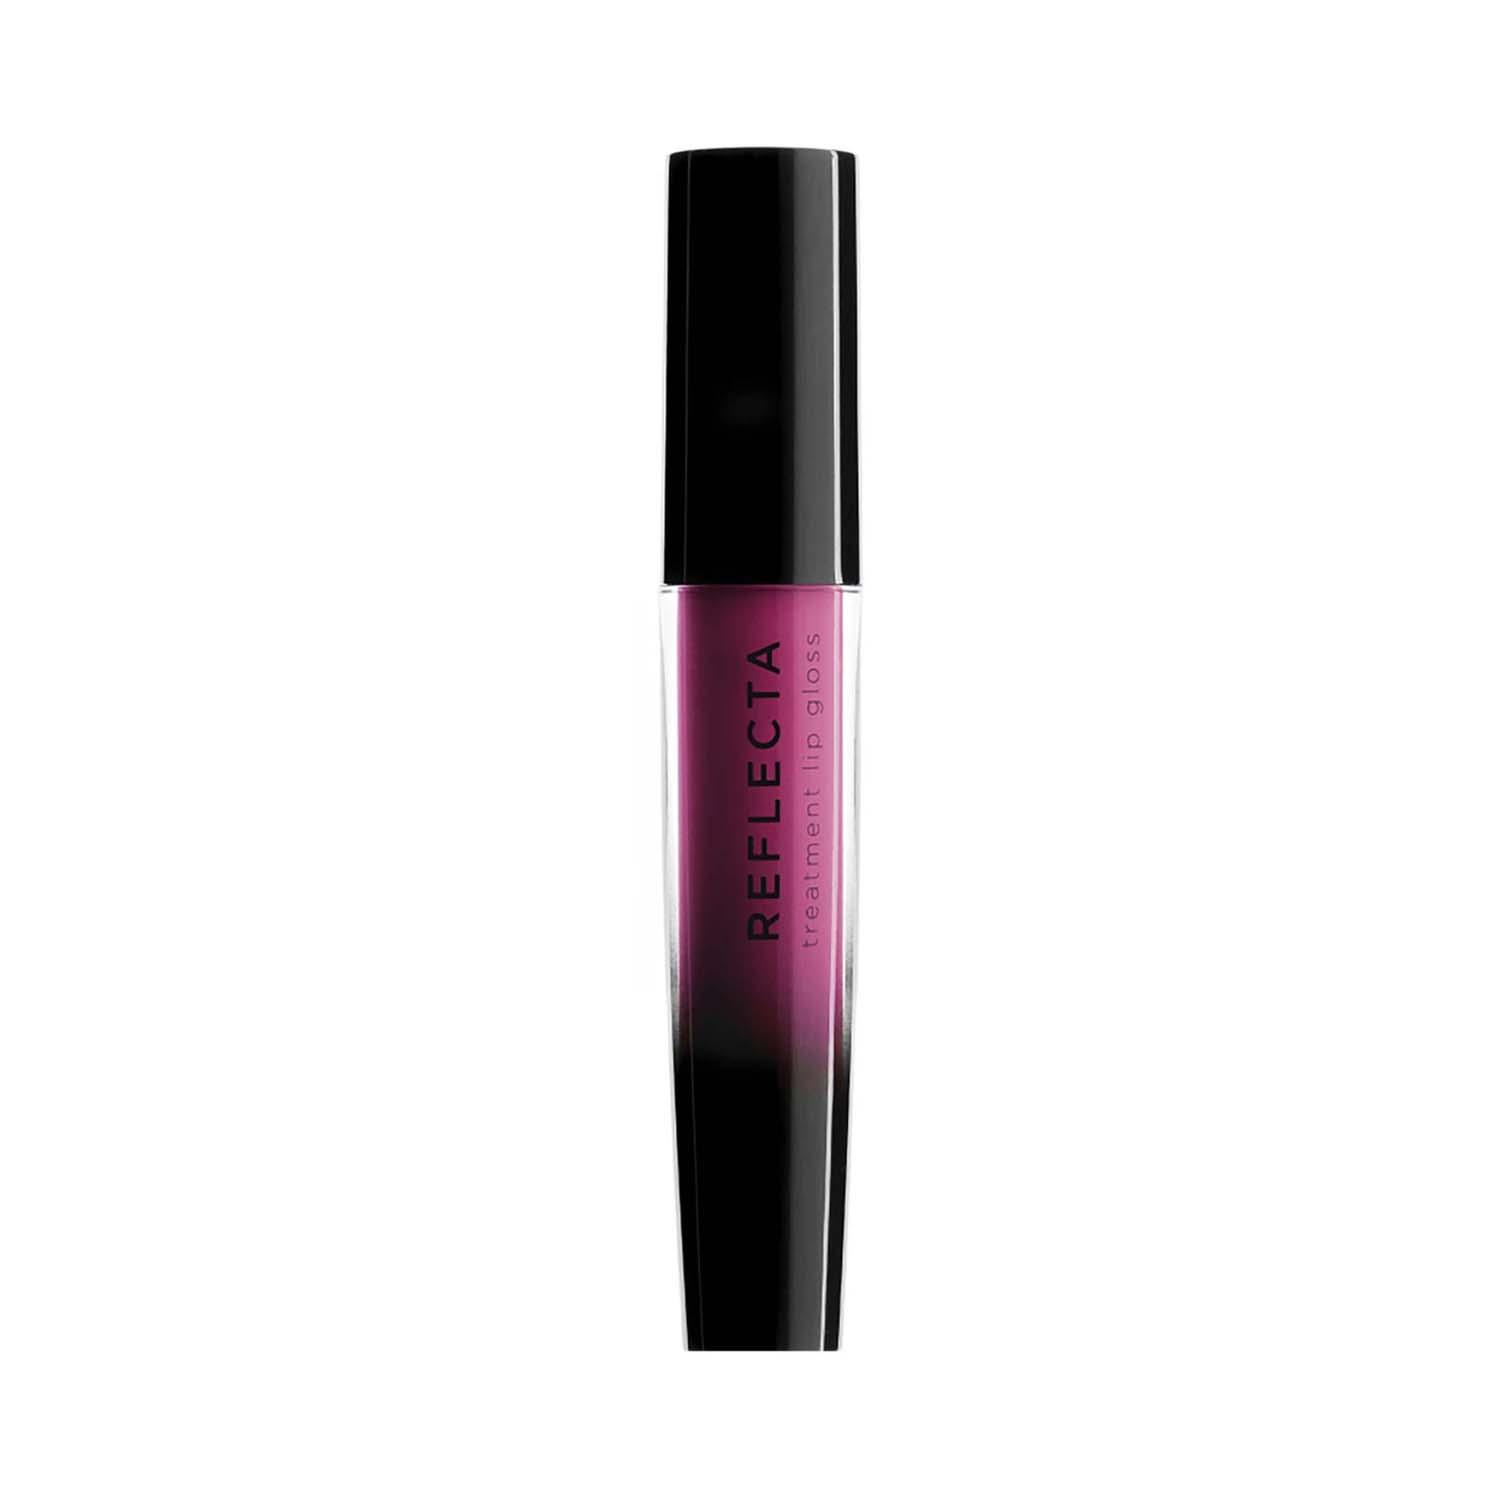 Nouba | Nouba Reflecta Treatment Lip Gloss - No 18 Pink (3.5 ml)